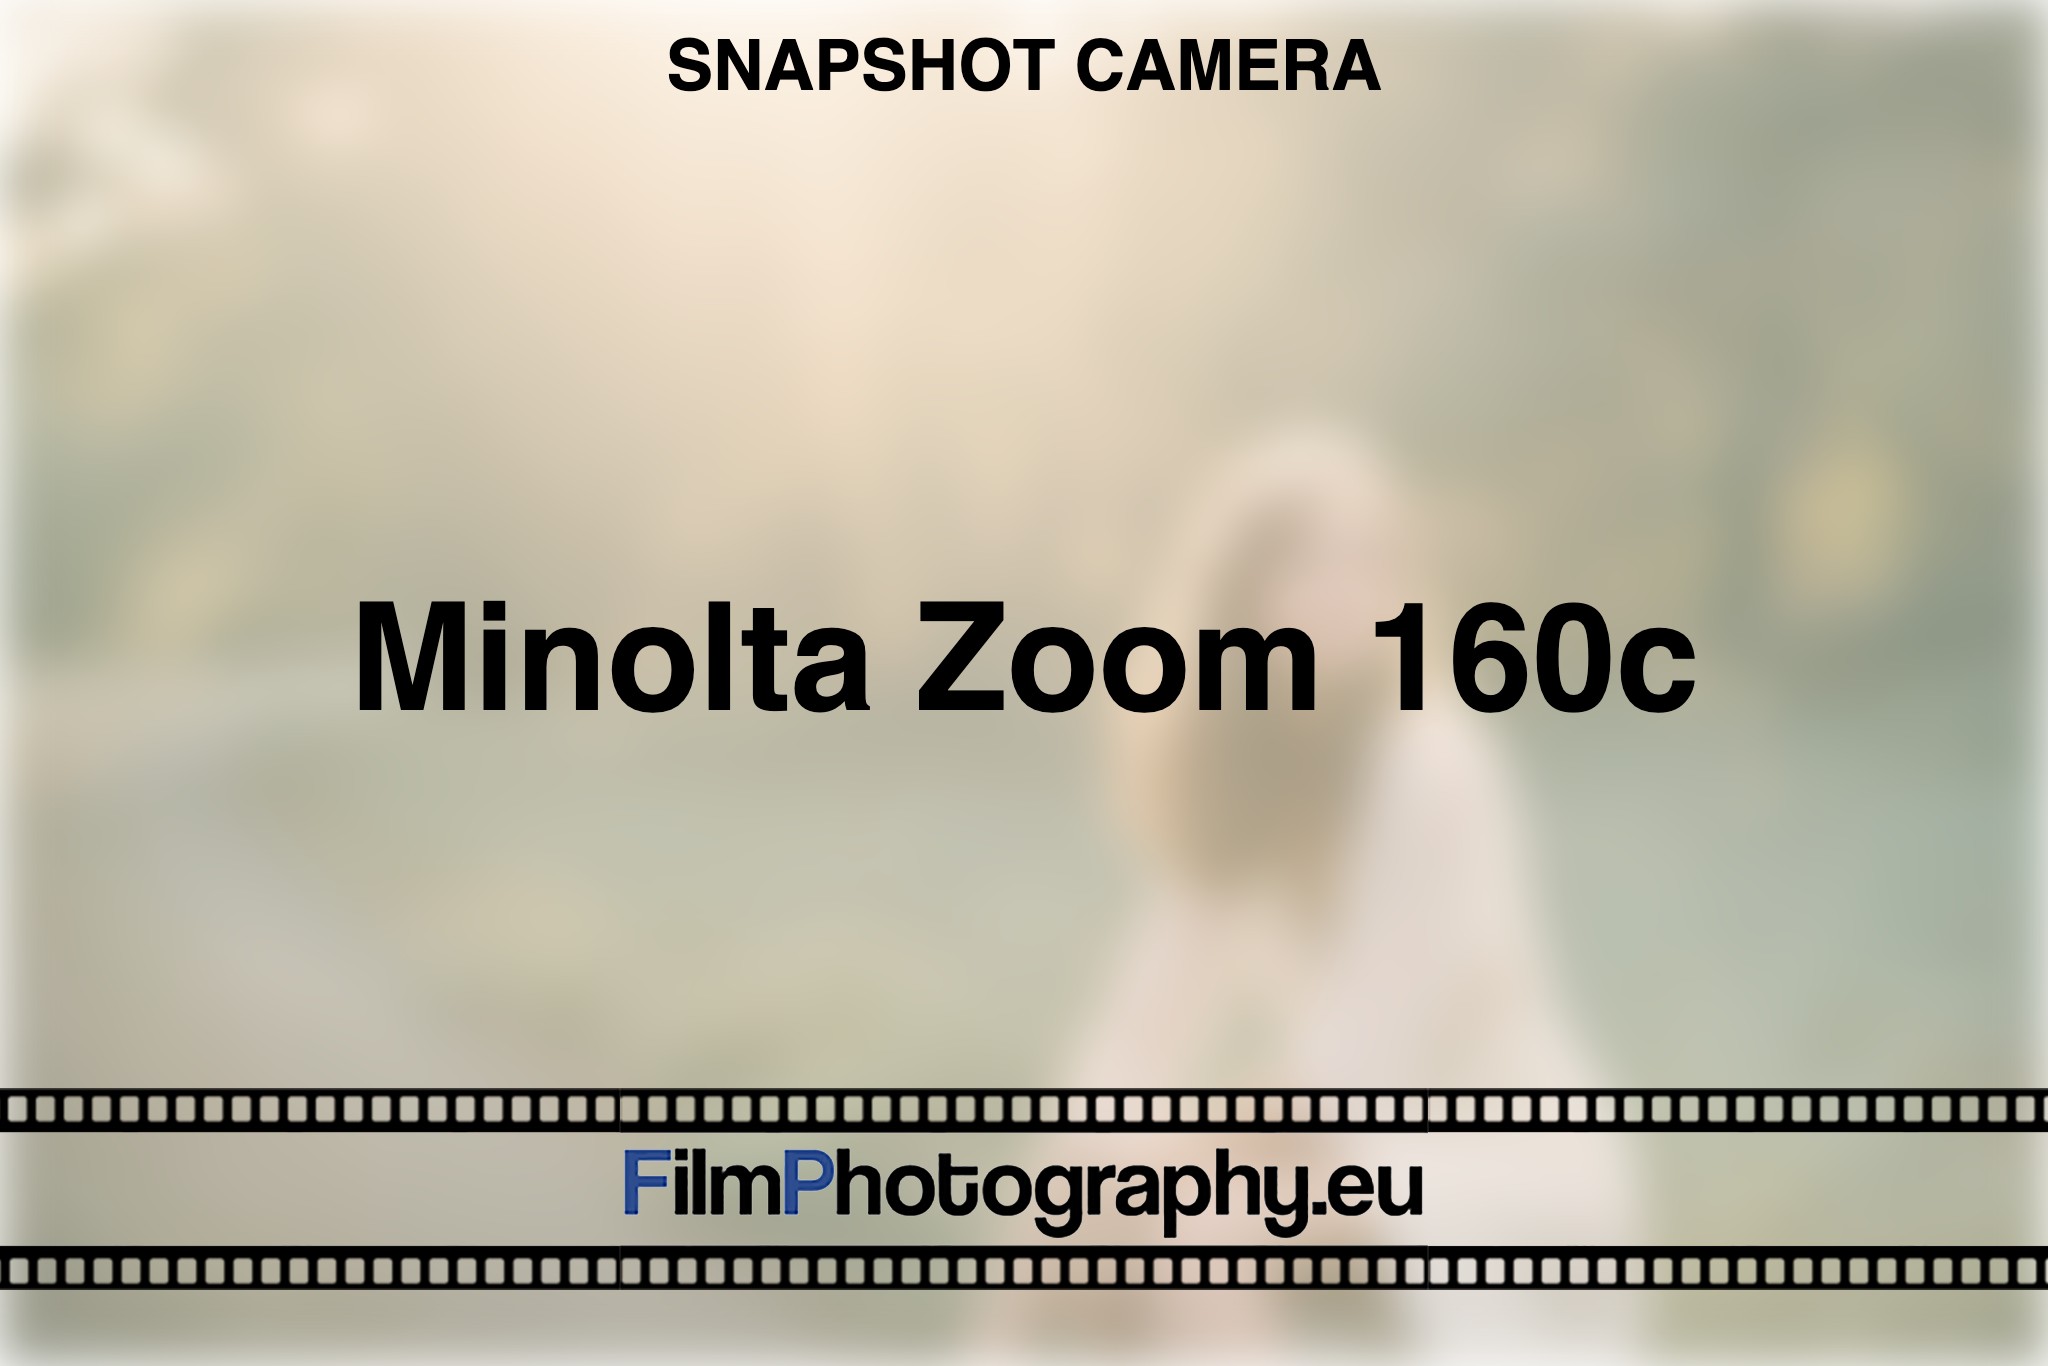 minolta-zoom-160c-snapshot-camera-bnv